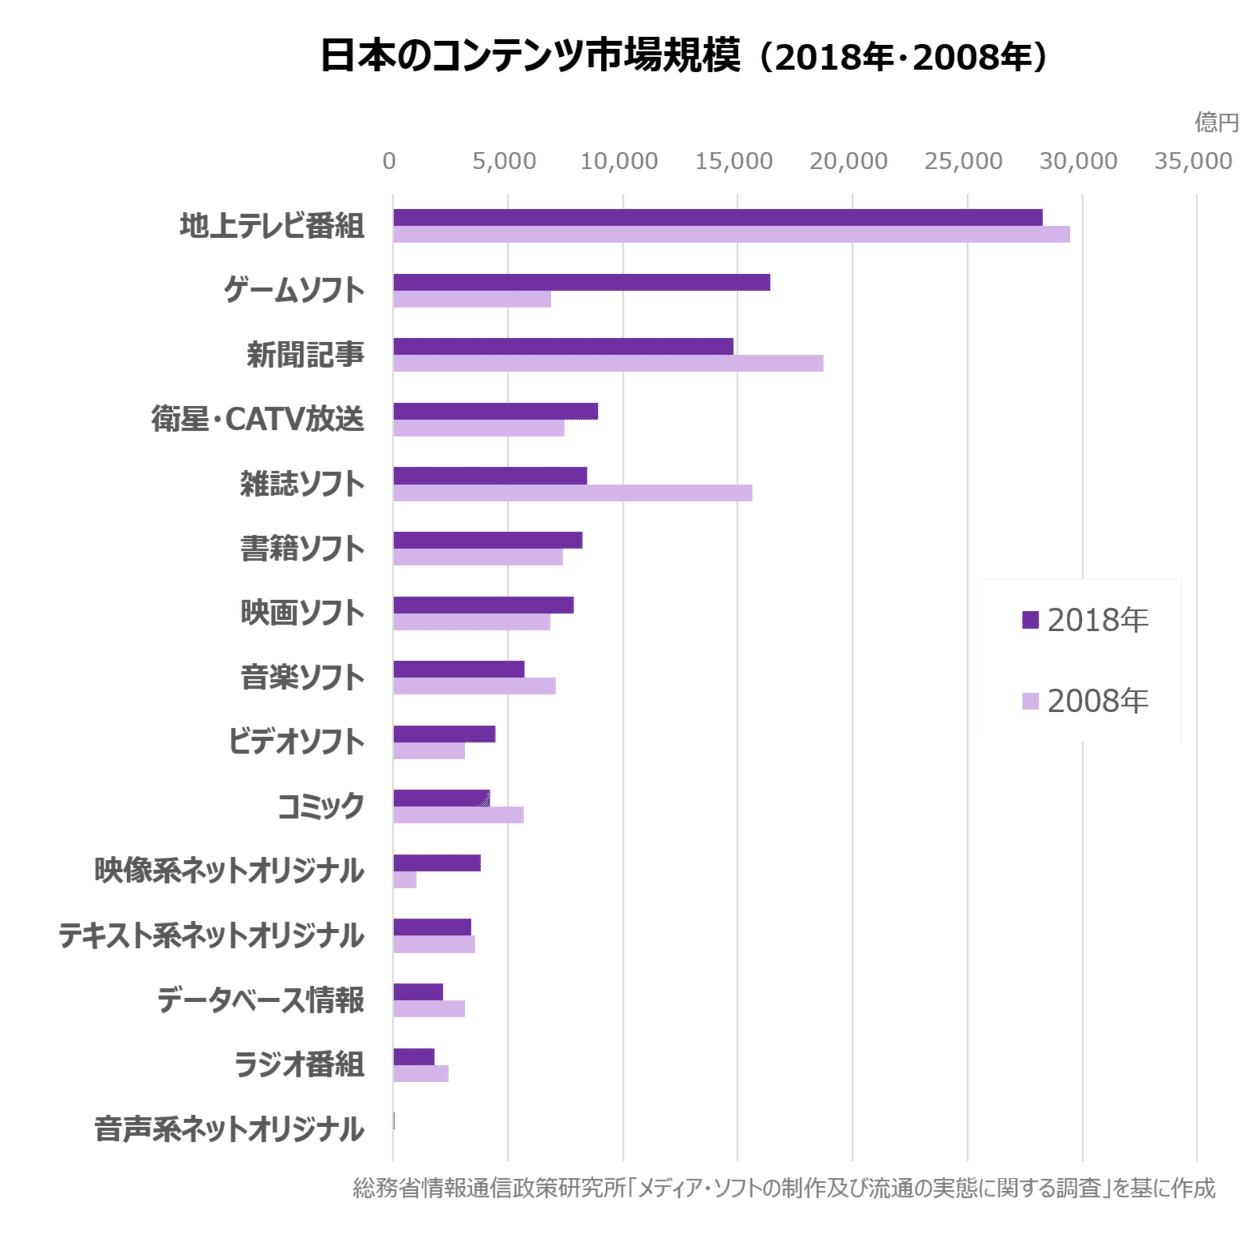 日本のコンテンツビジネスの市場規模はこの10年でどう変化したか／実は縮小していない書籍ビジネス｜富岡秀夫｜note